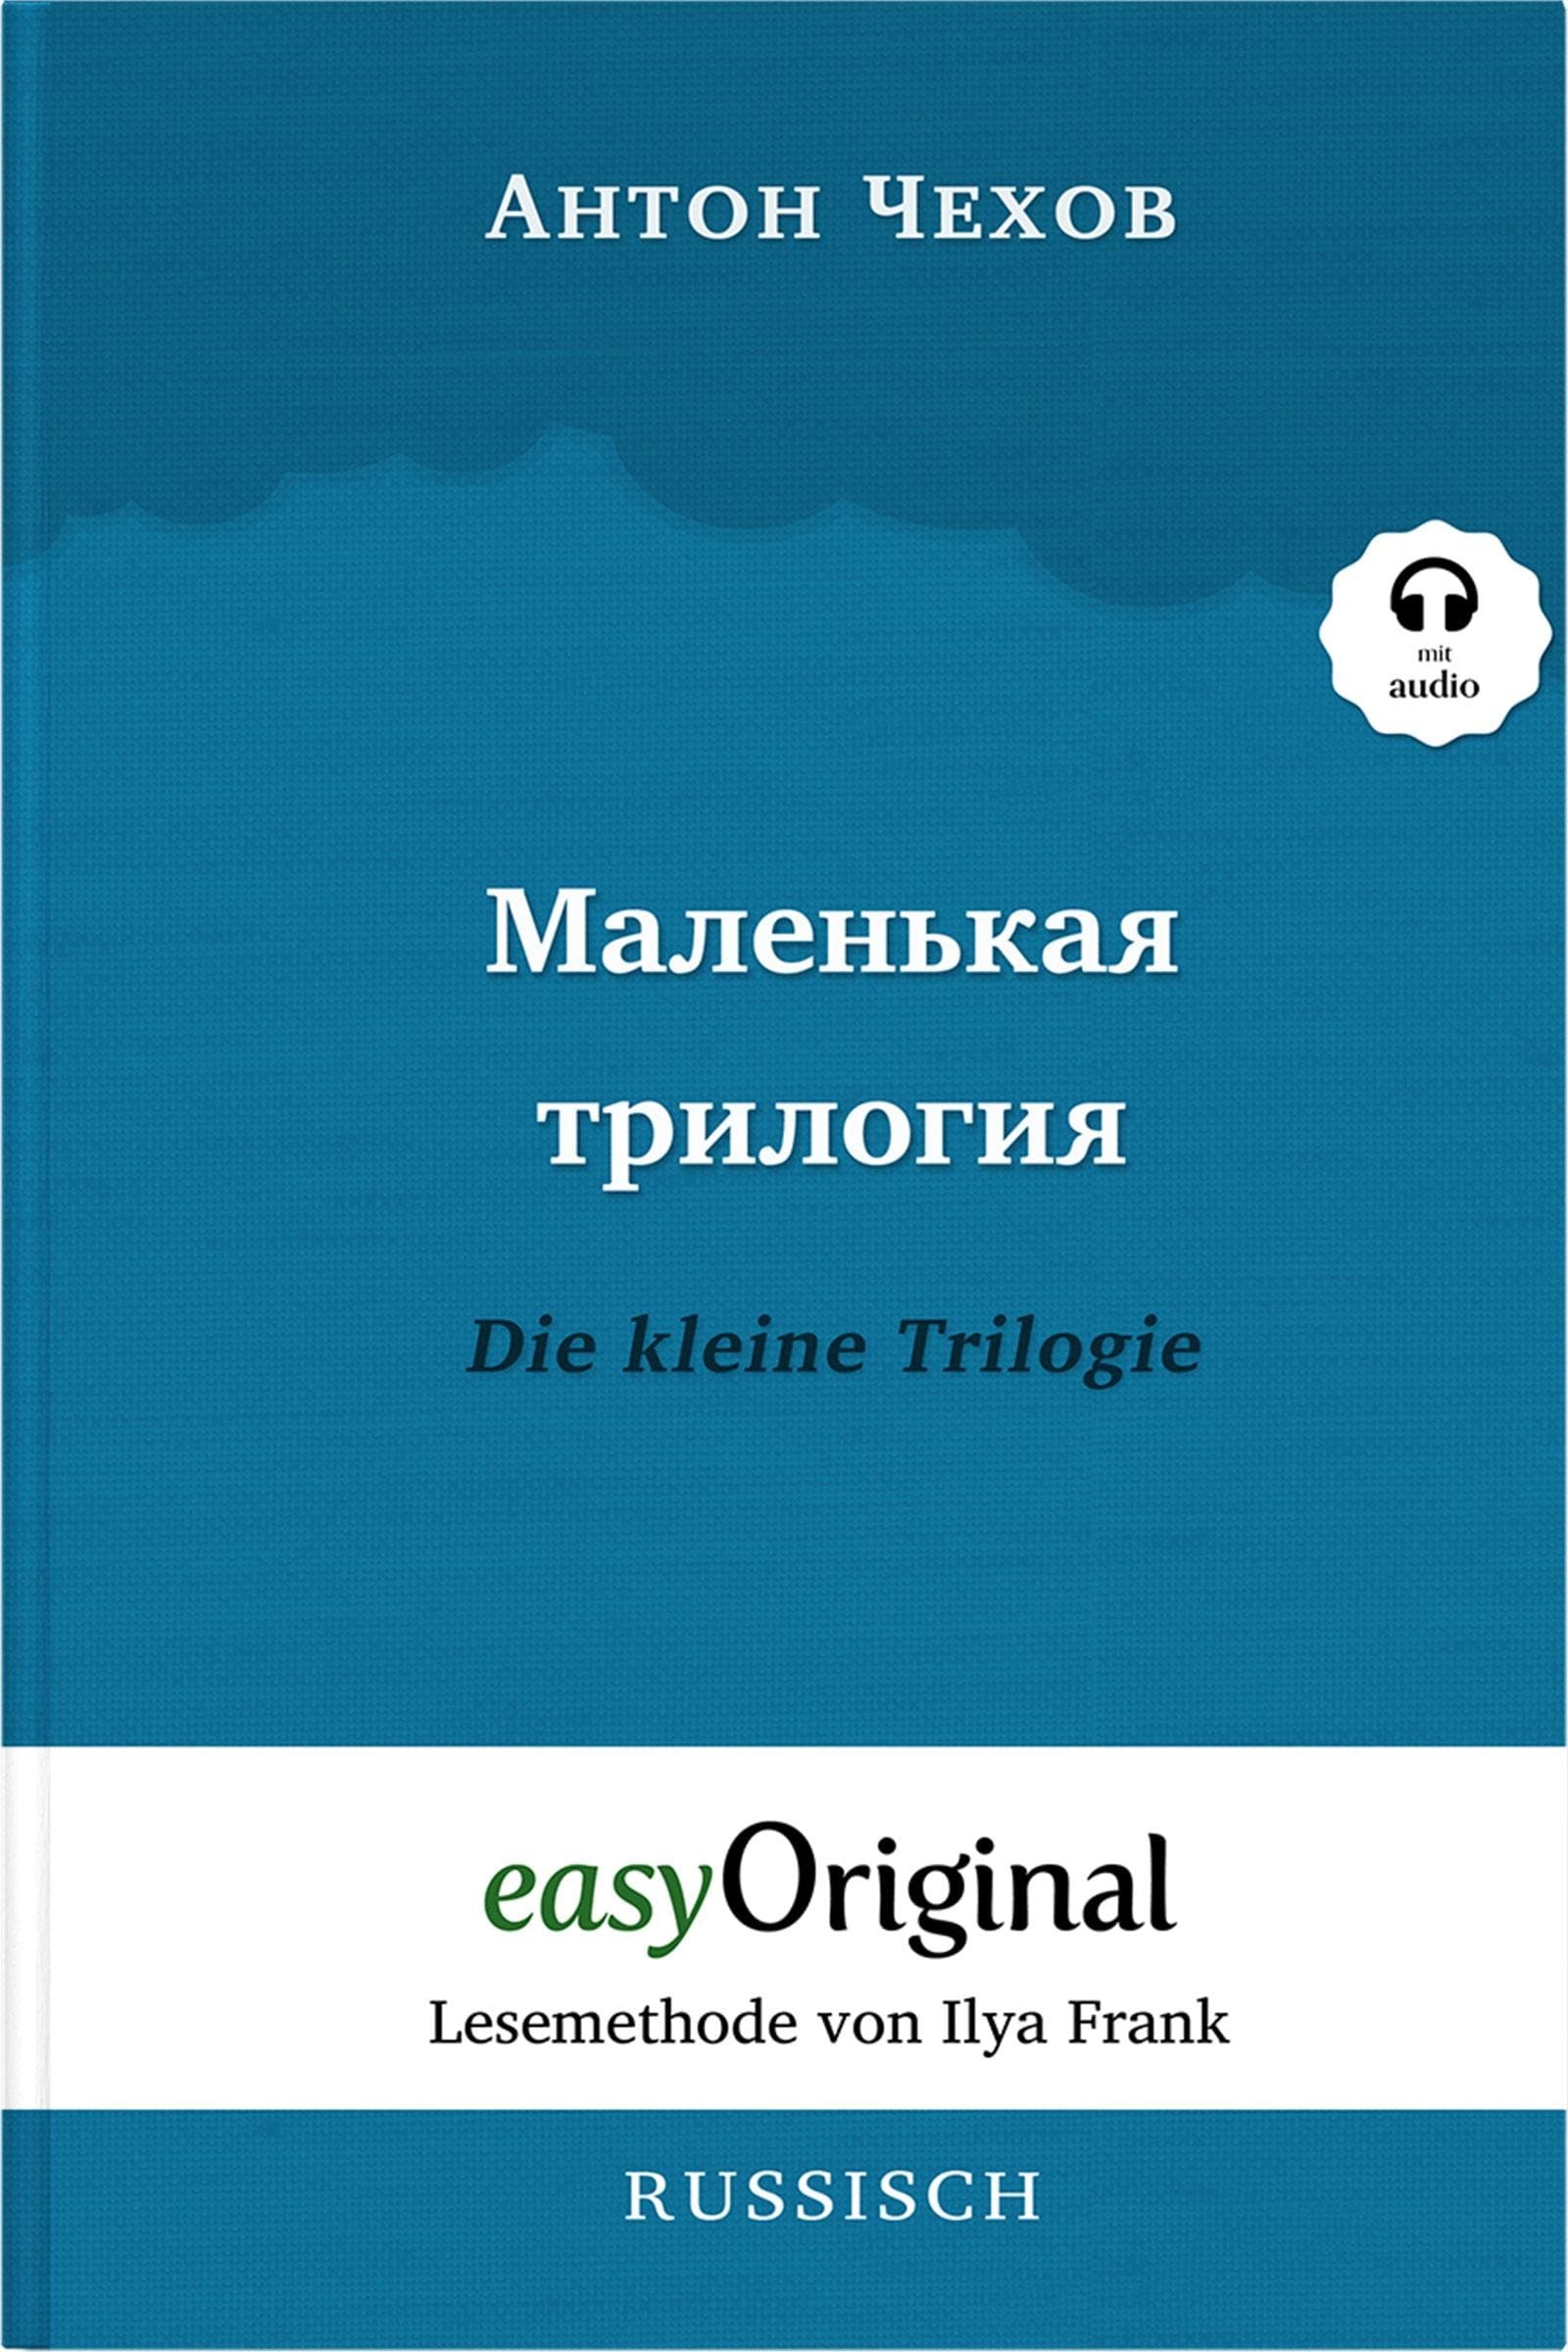 Malenkaya Trilogiya / Die kleine Trilogie Hardcover - Lesemethode von Ilya Frank - Zweisprachig, Belletristik